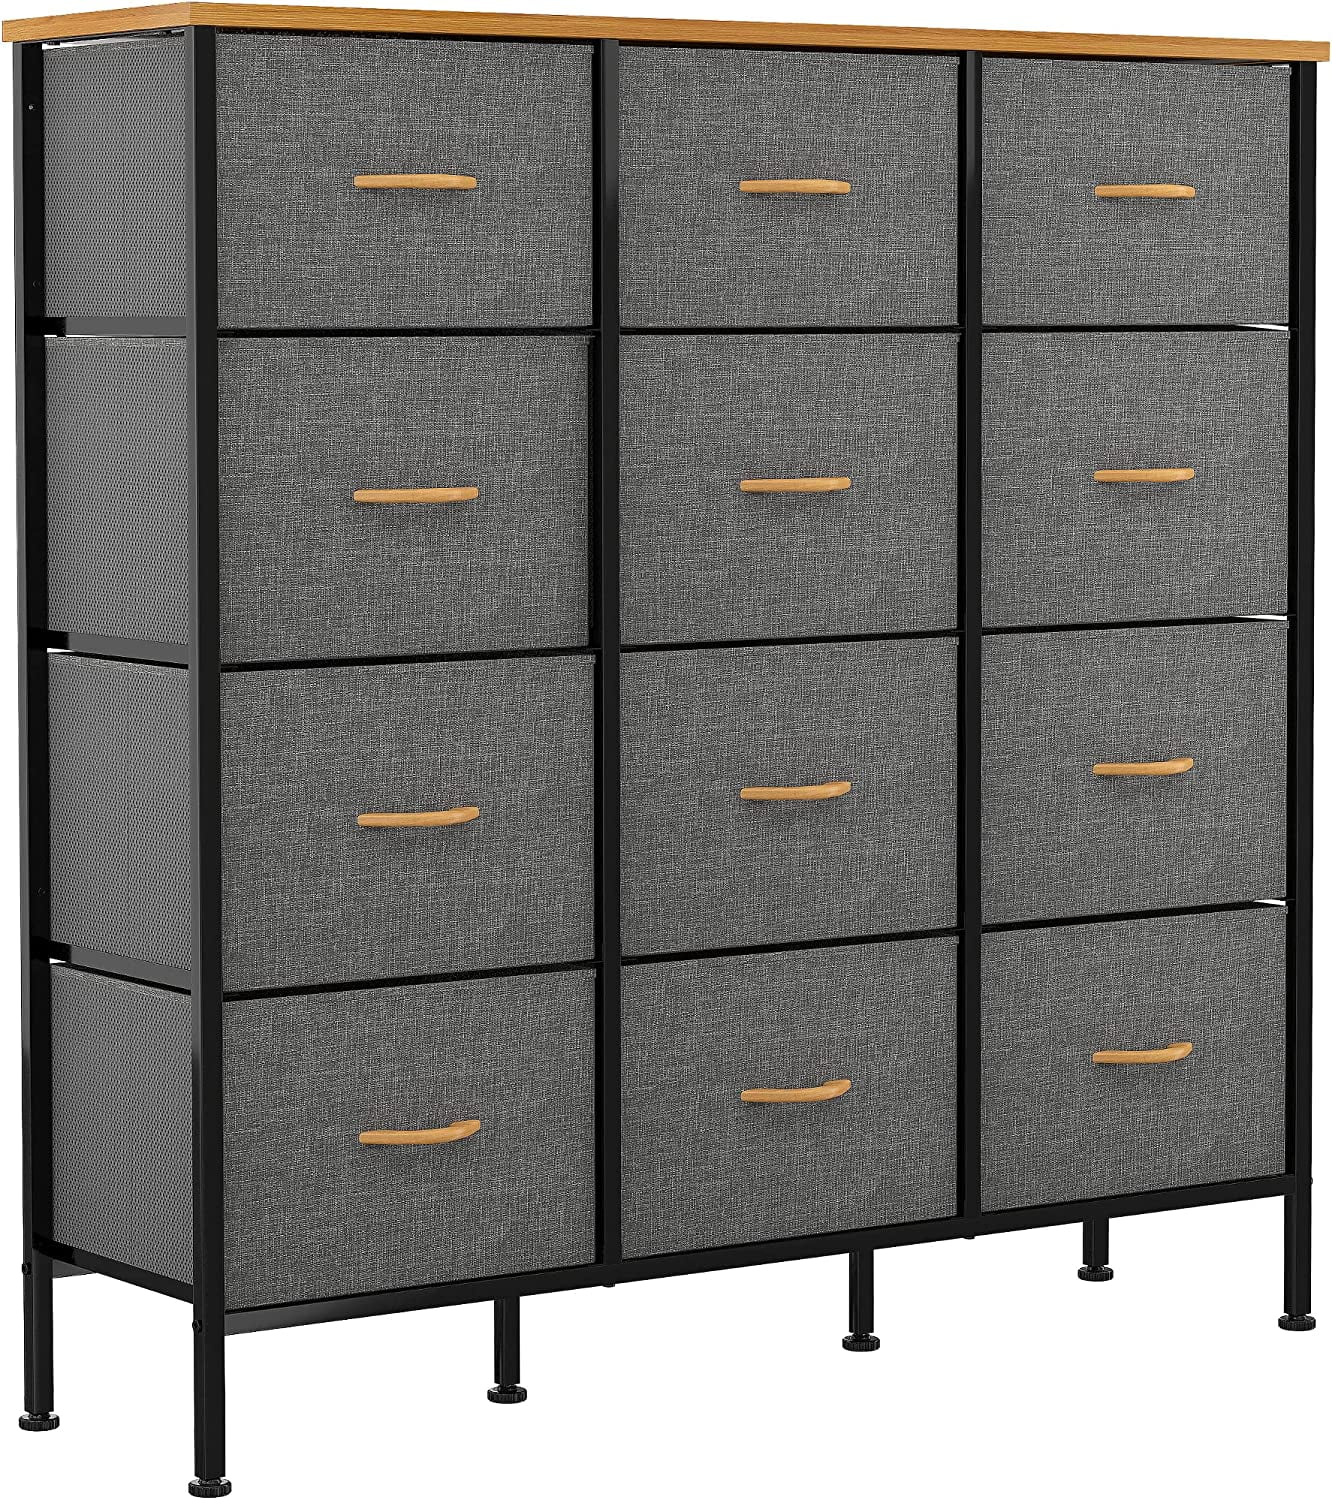 Pirecart 12-drawer Dresser, Fabric Storage Tower W/textured Print